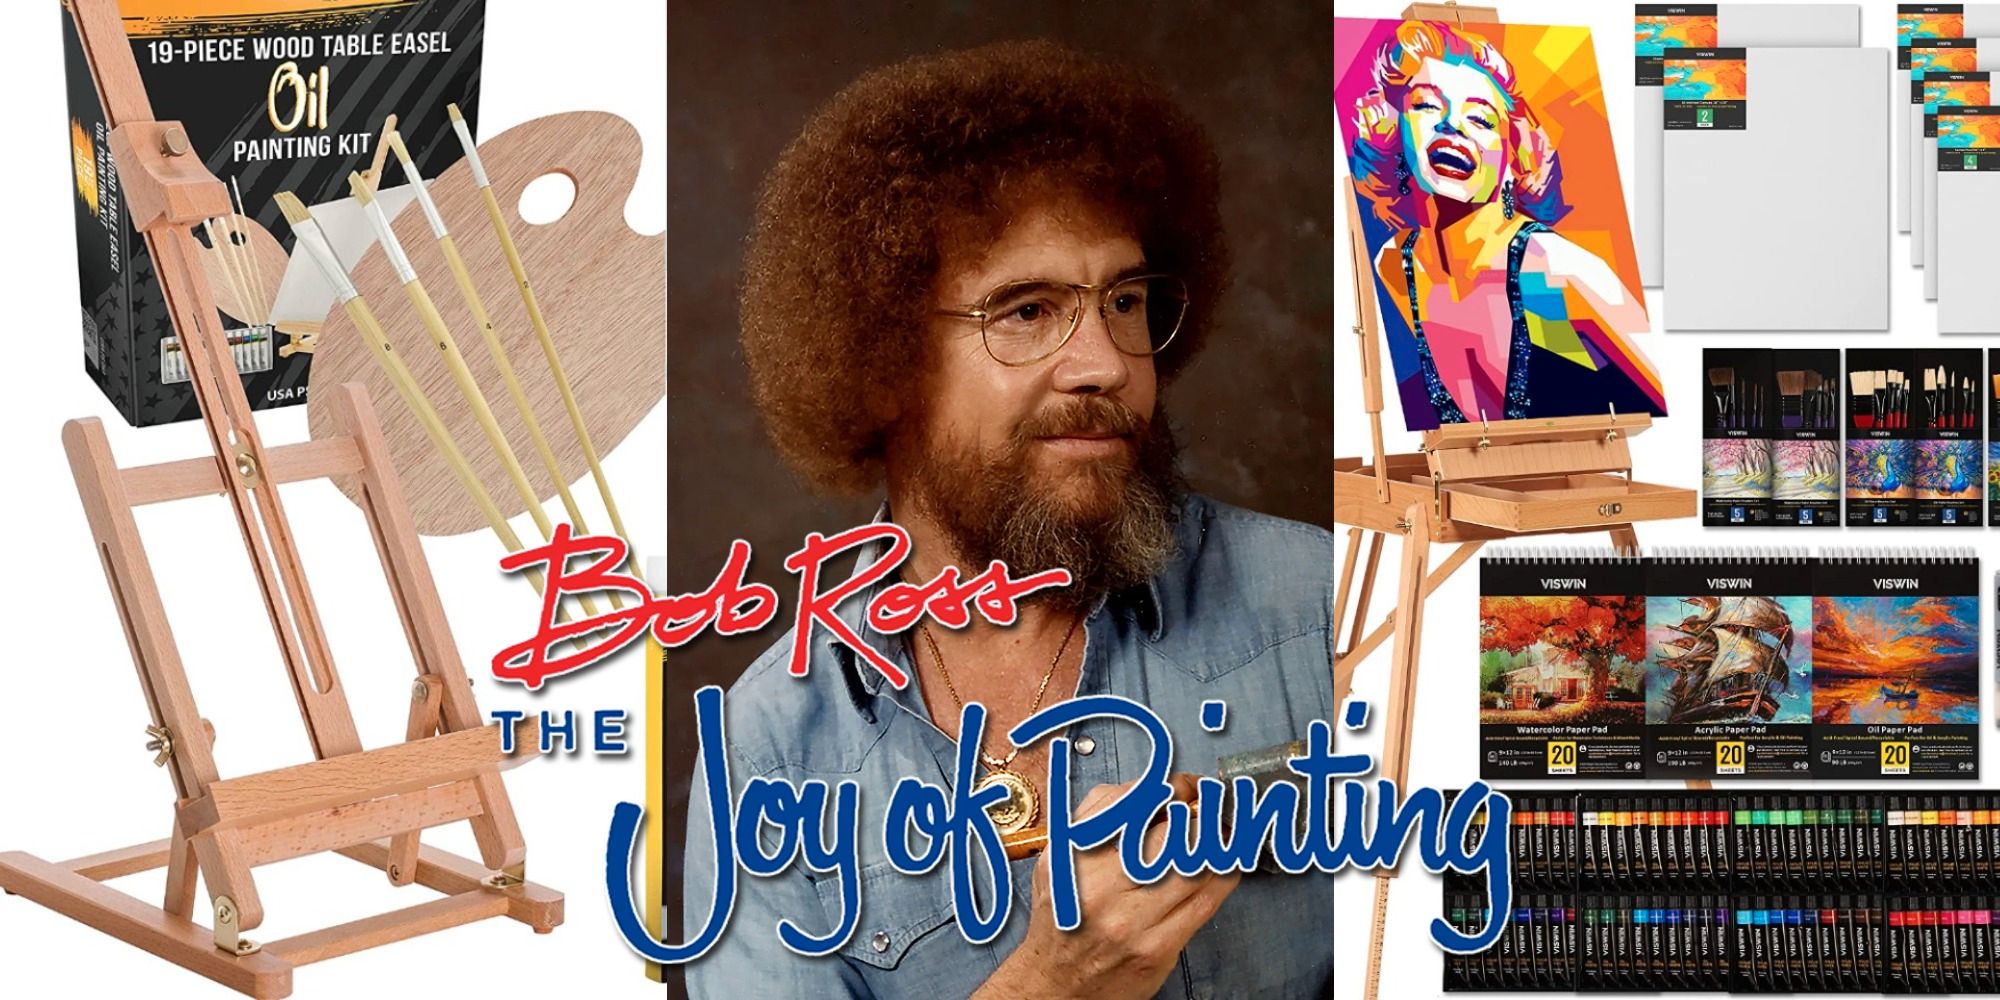 Los 10 mejores kits de pintura para comprar para los episodios de Bob Ross (del más barato al más caro)